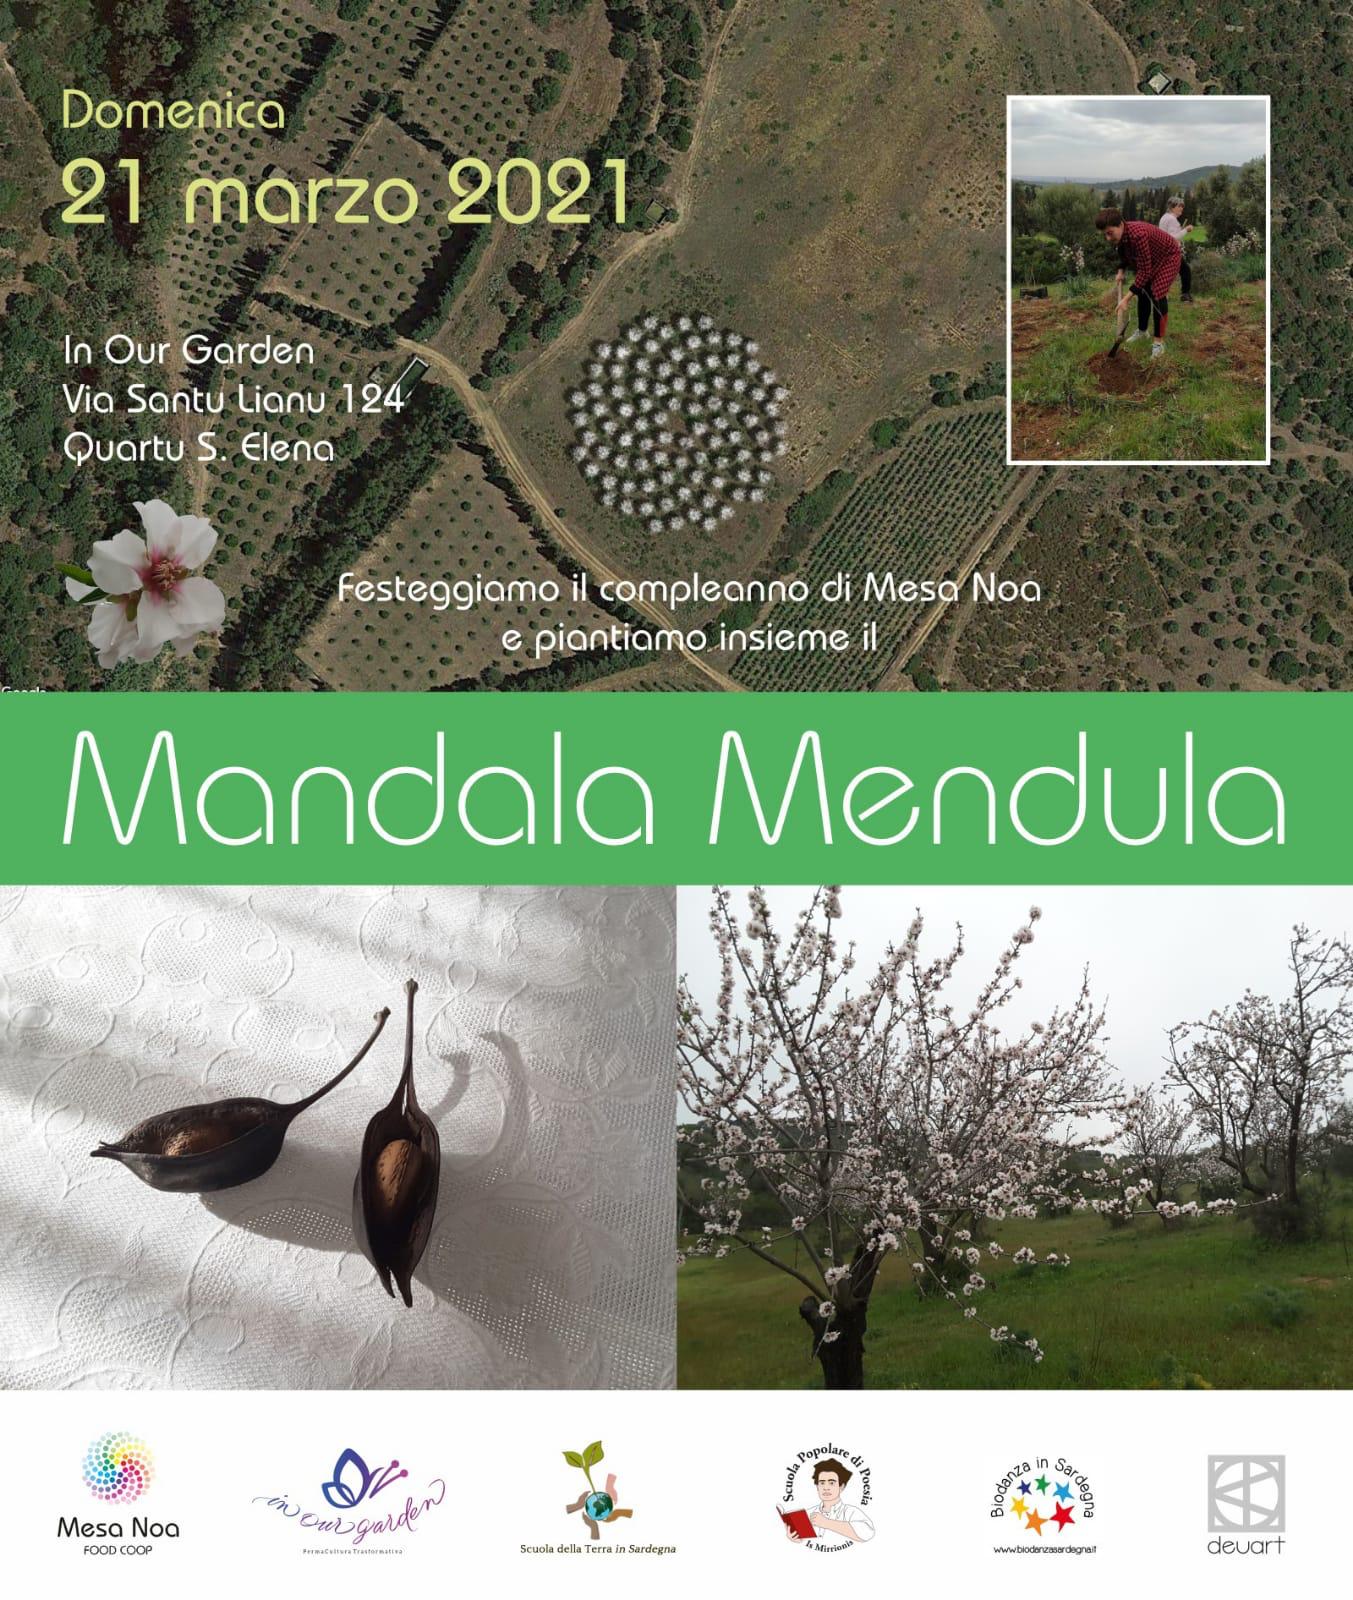 Al momento stai visualizzando Mandala Mendula di Our Garden